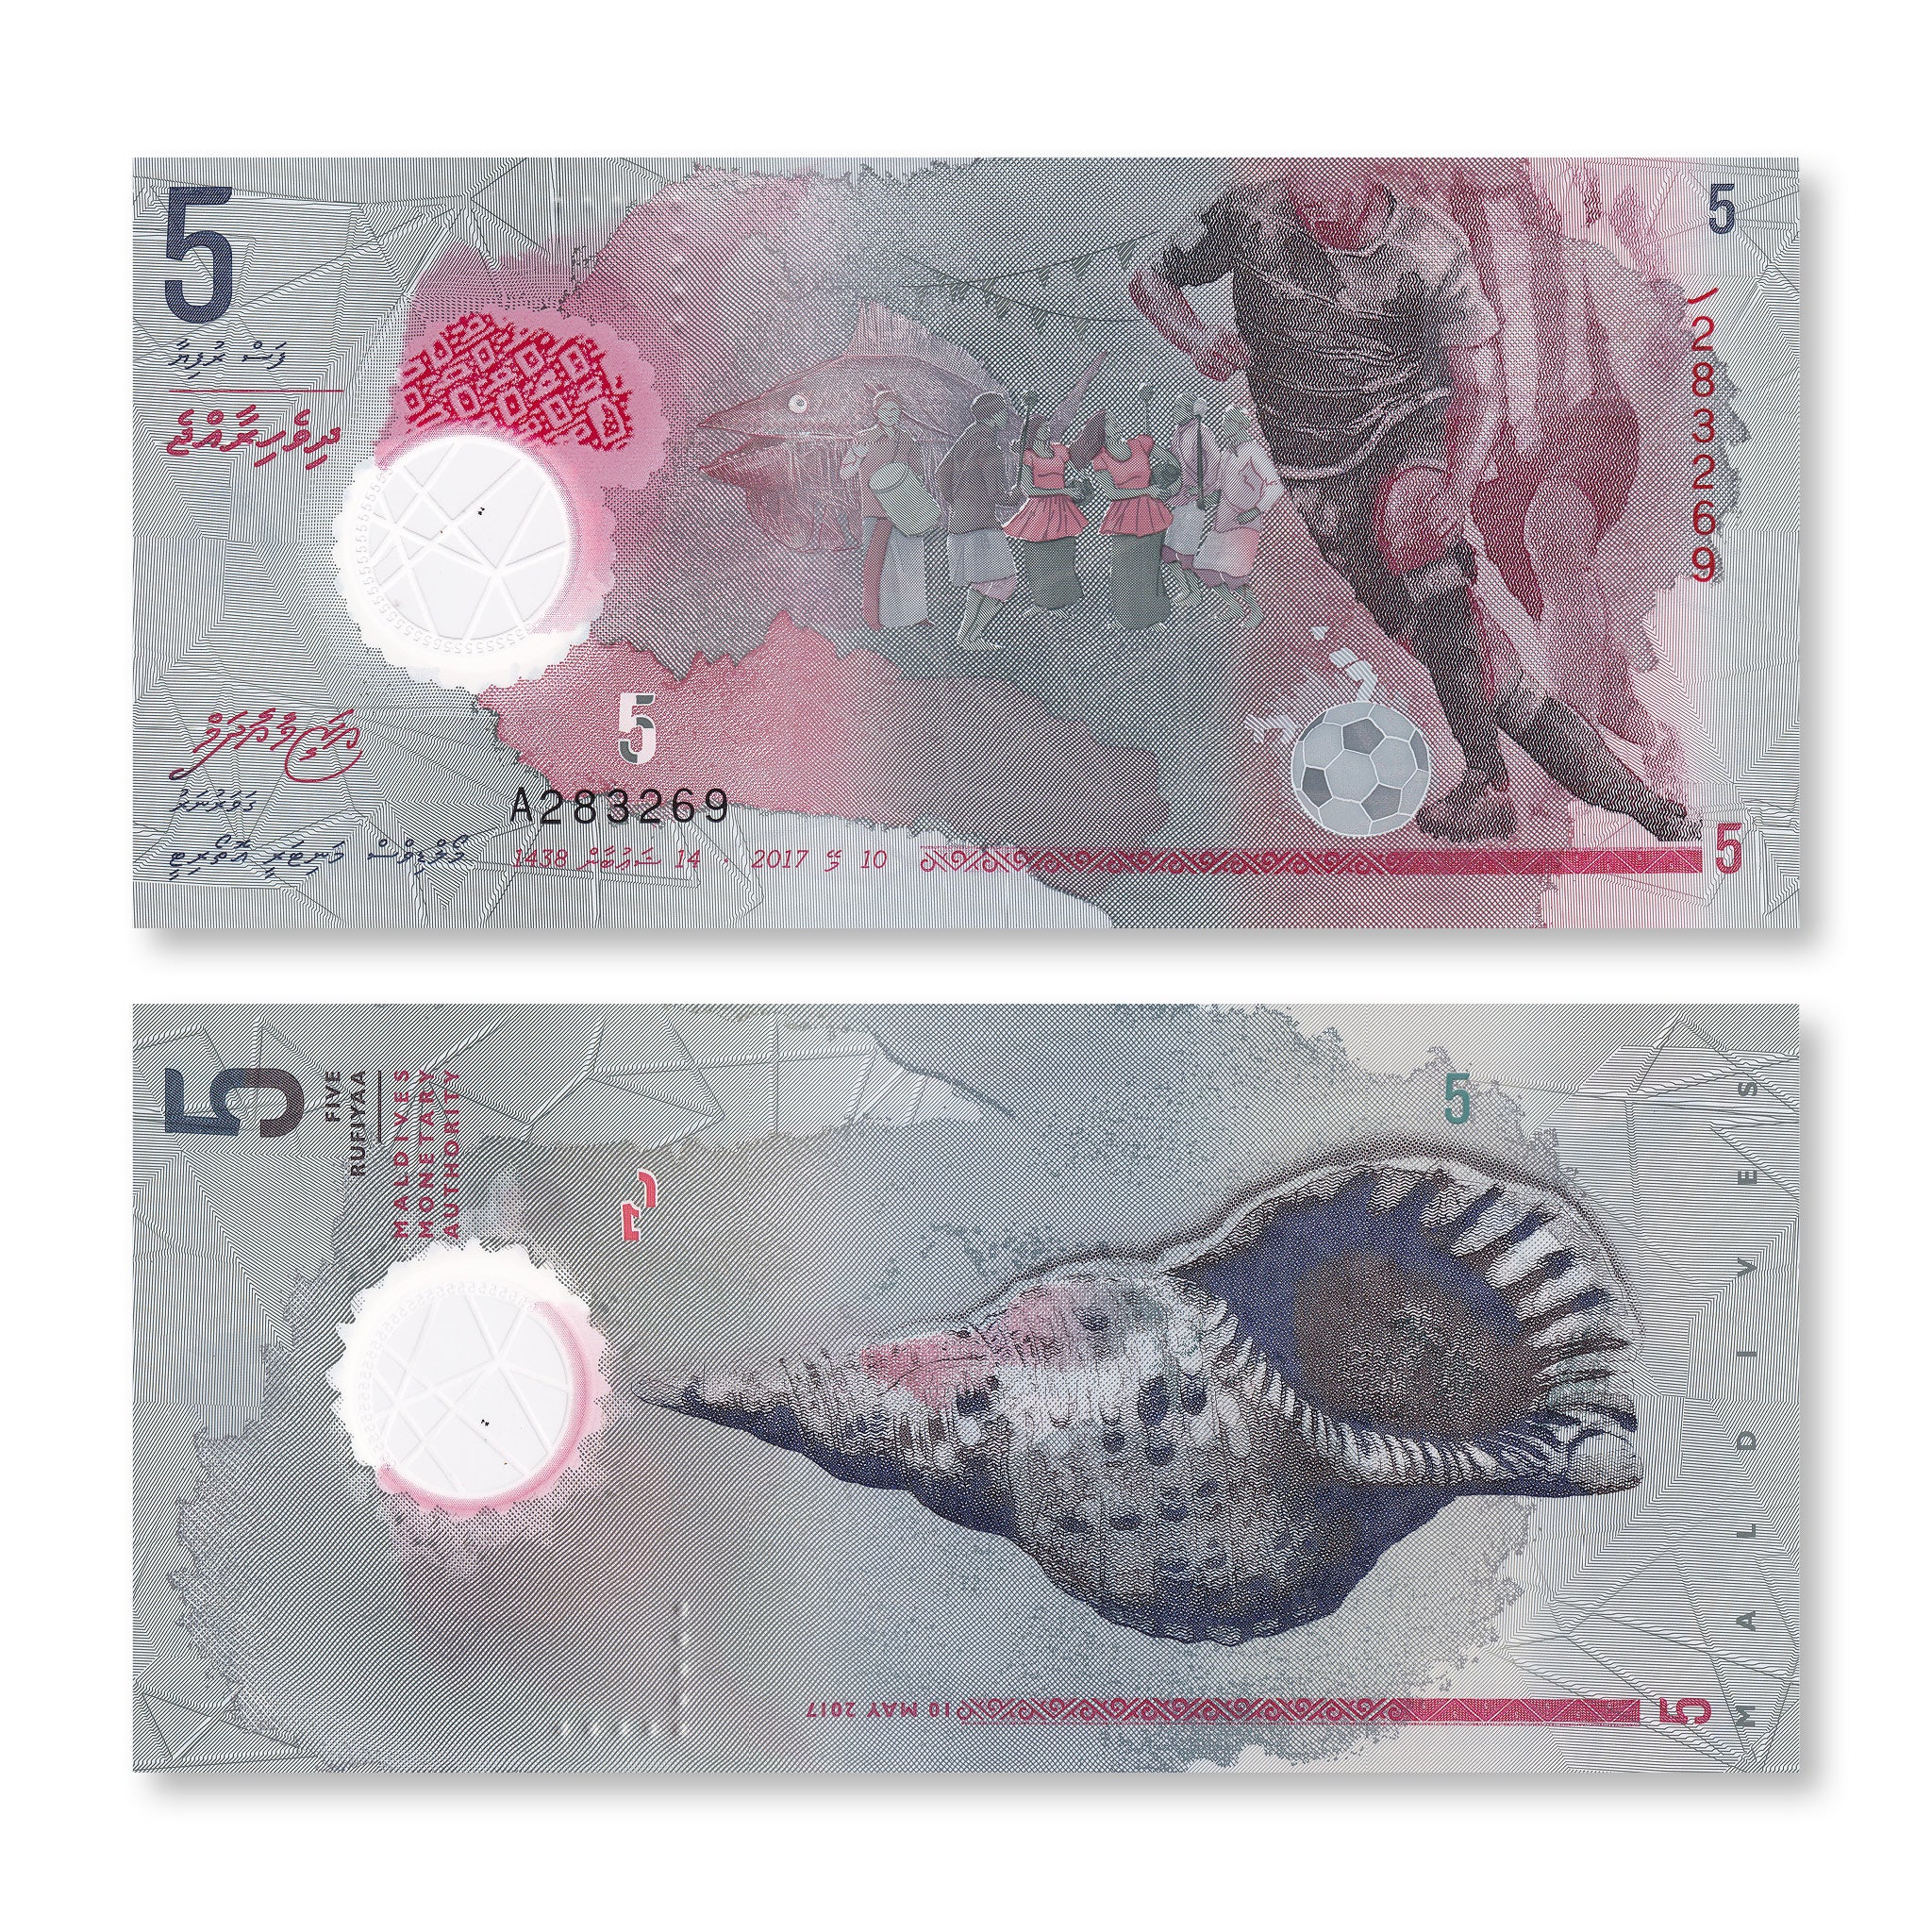 Maldives 5 Rufiyaa, 2017, B222a, PA26a, UNC - Robert's World Money - World Banknotes